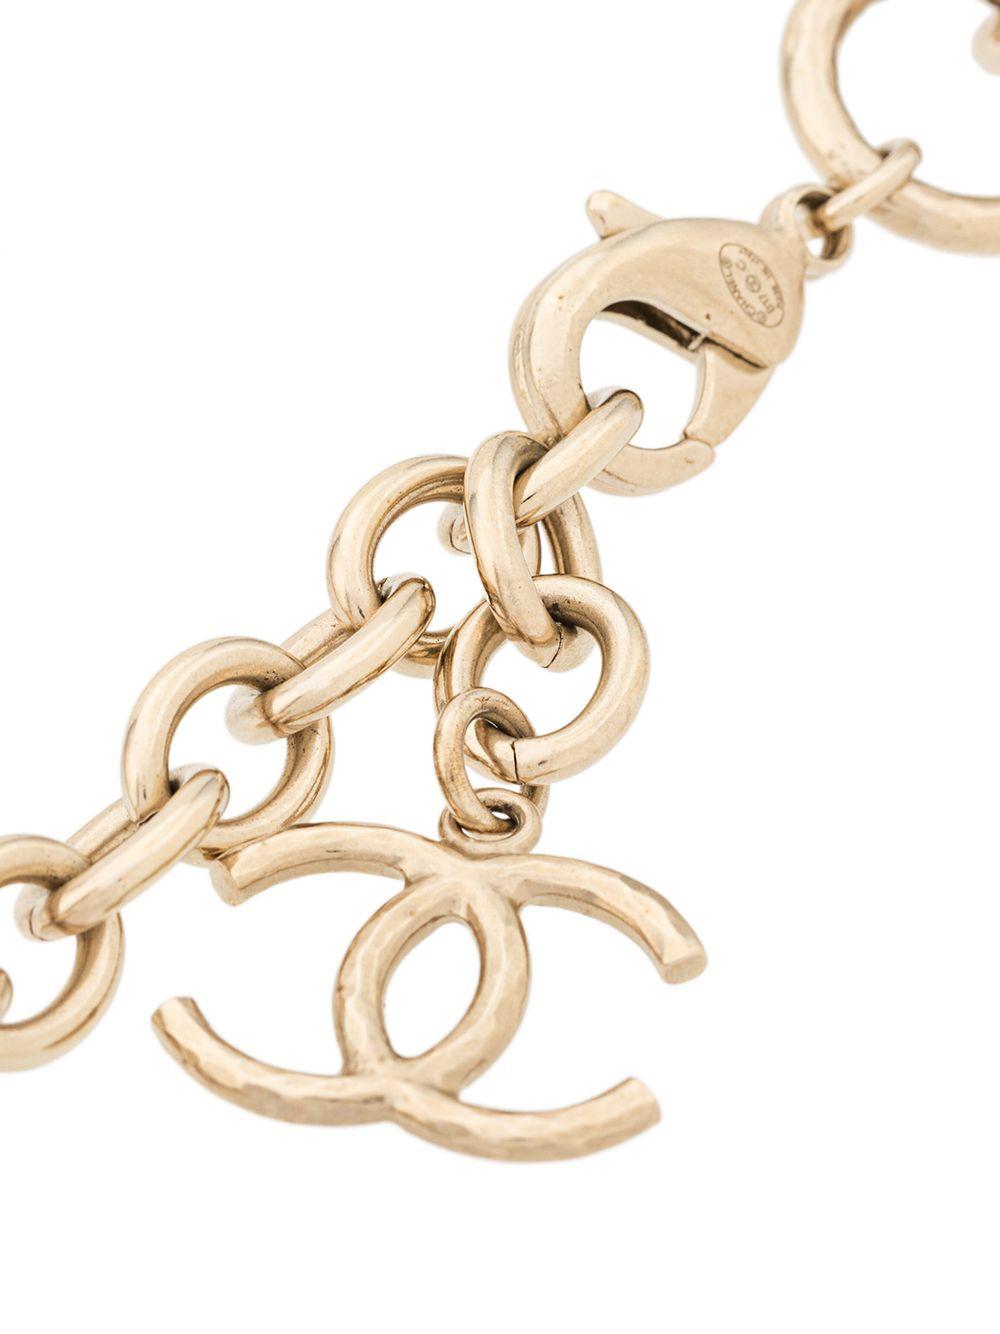 Diese elegante, gebrauchte Halskette von Chanel, die in Frankreich gefertigt wurde, ist ein einzigartiges Stück, das jedem Outfit einen Hauch von klassischer Raffinesse verleiht. Die vergoldeten Metallglieder der Kette sind mit den unverwechselbaren